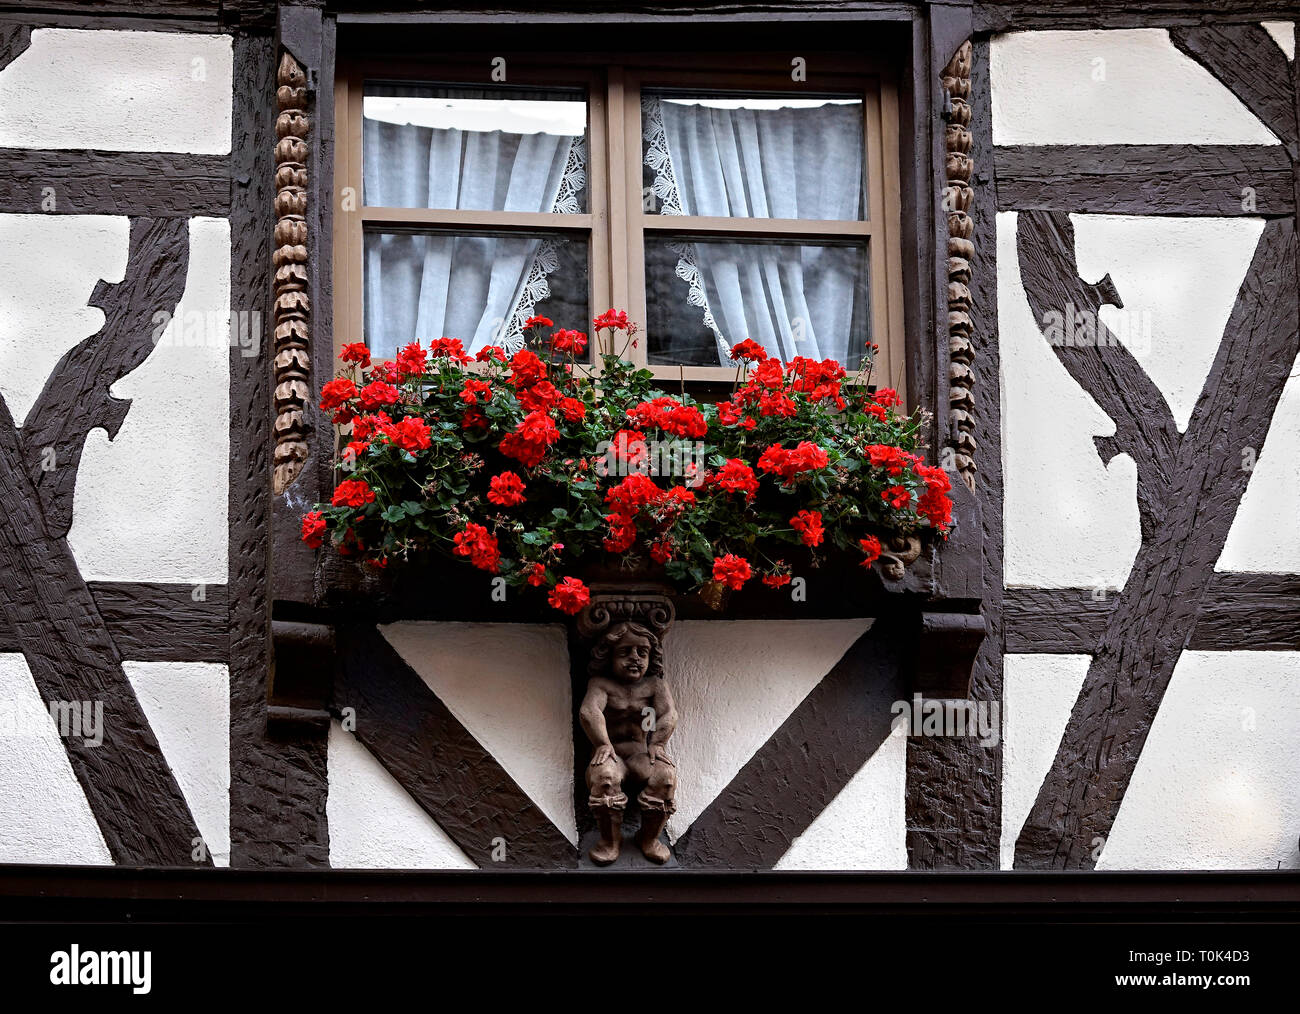 Europe, France, Alsace, Ribeauvillé, fenêtre d'une maison avec des fleurs. Banque D'Images